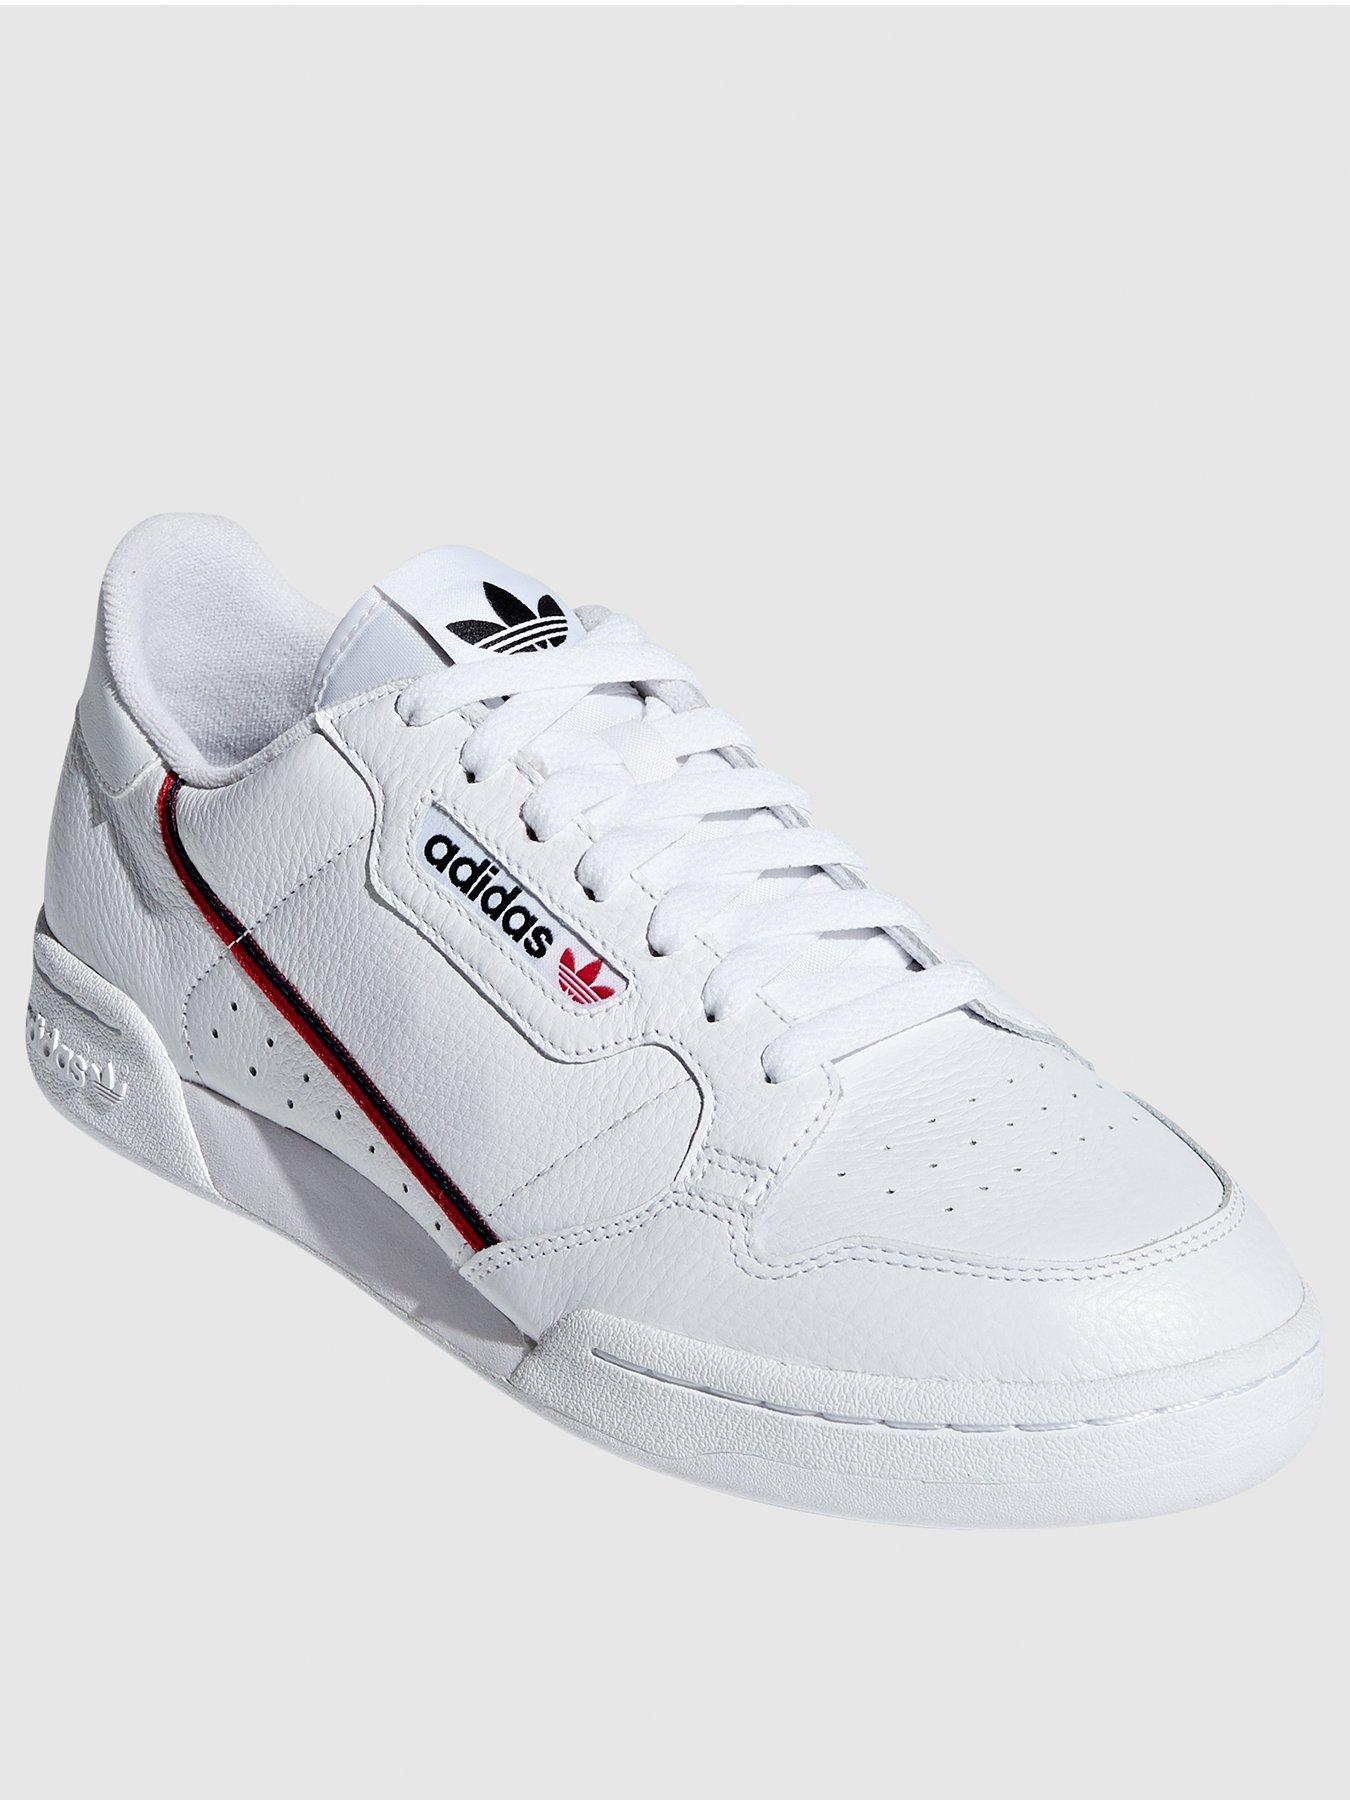 white adidas size 3